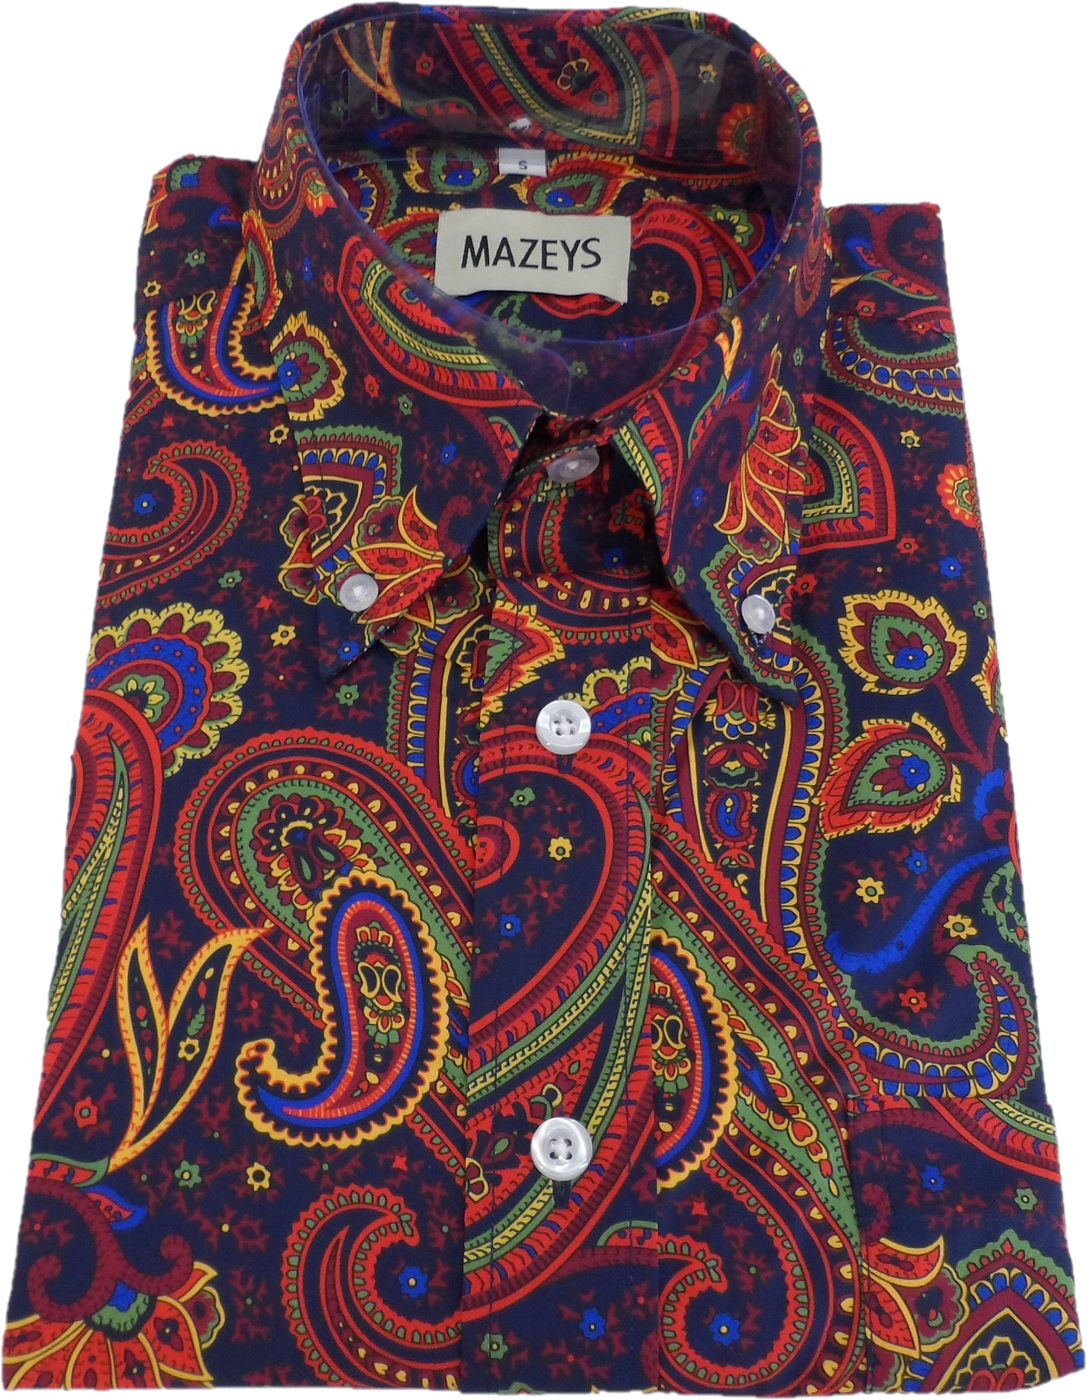 Mazeys Herren-Hemd im Stil der 60er und 70er Jahre, marineblau, mehrfarbig, Retro-Paisleymuster